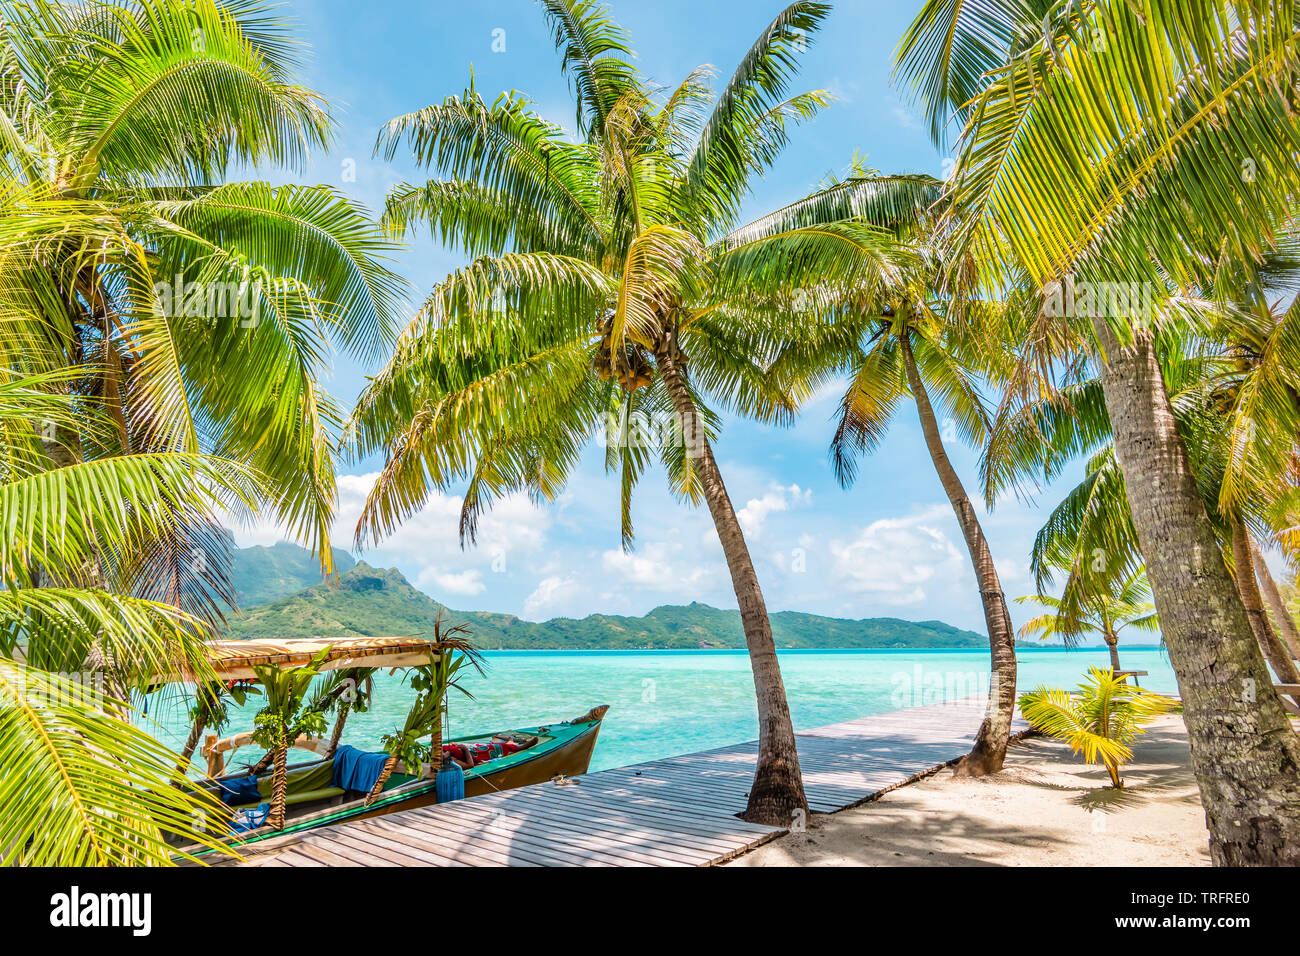 Bellissimo paesaggio con palme di cocco sull isola tropicale di Bora Bora. Decorate la barca turistica ormeggiata in banchina in legno. Foto Stock